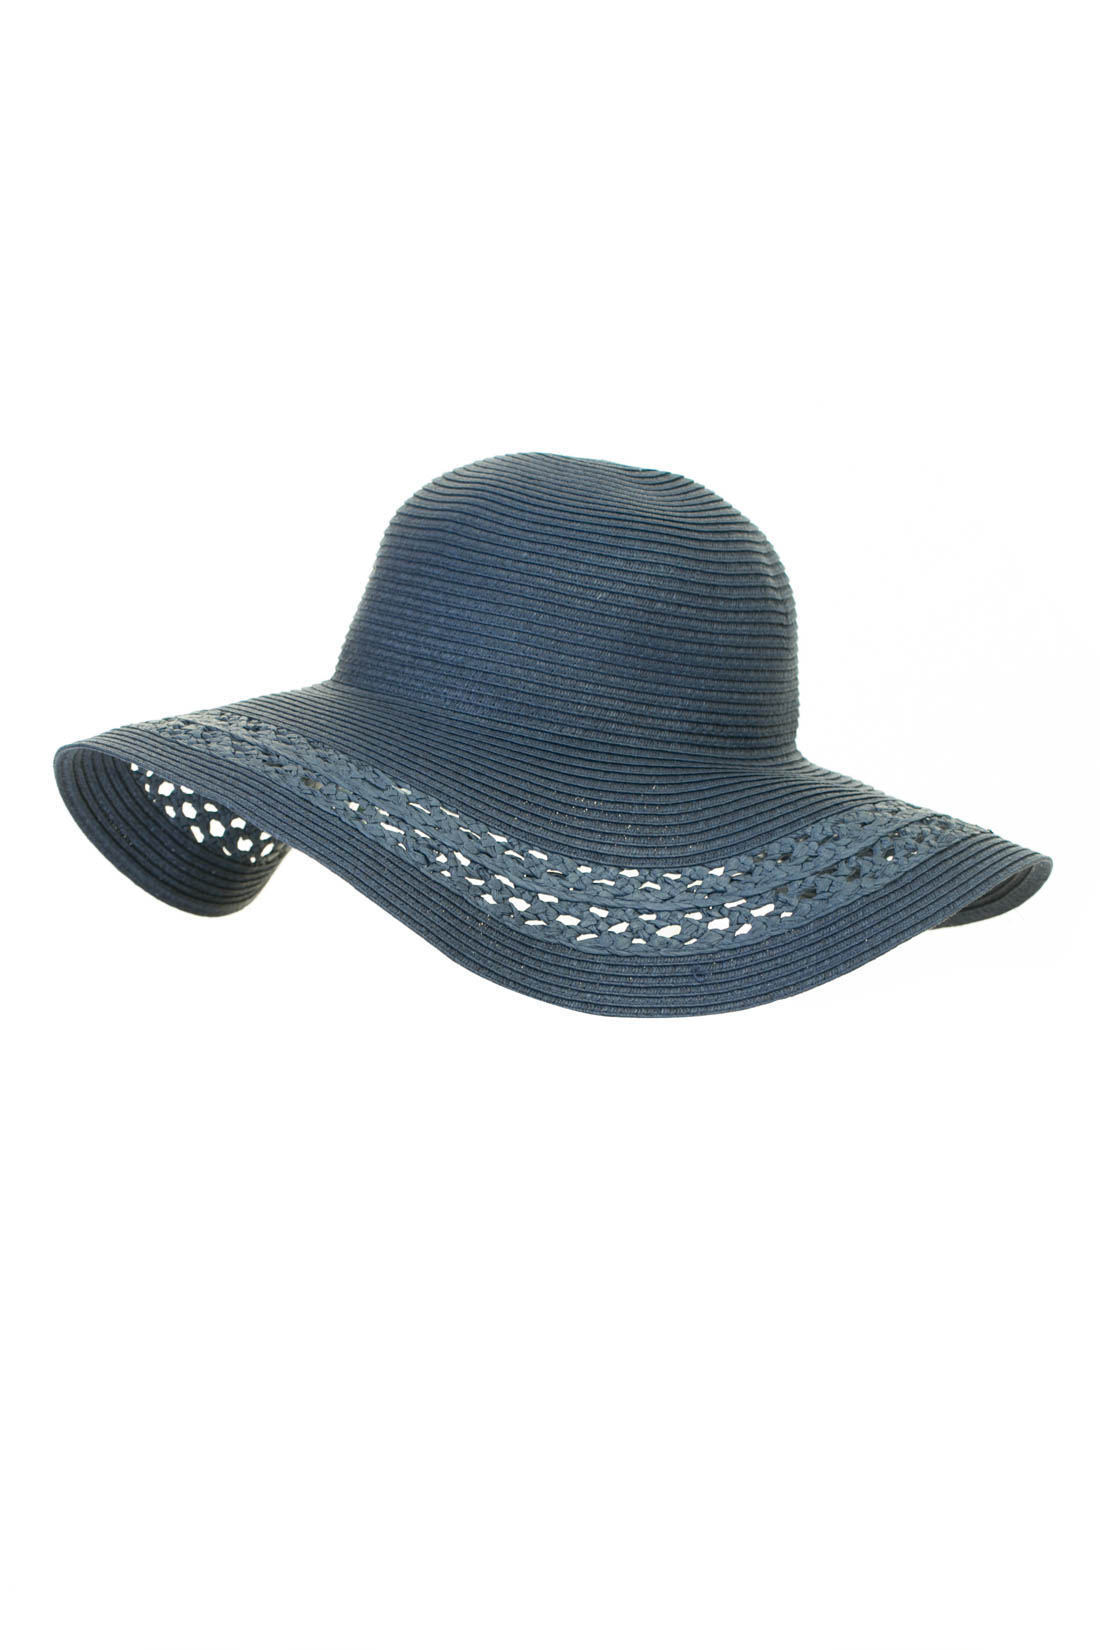 Широкополая шляпа с узором (арт. baon B347003), размер 54-56, цвет синий Широкополая шляпа с узором (арт. baon B347003) - фото 1